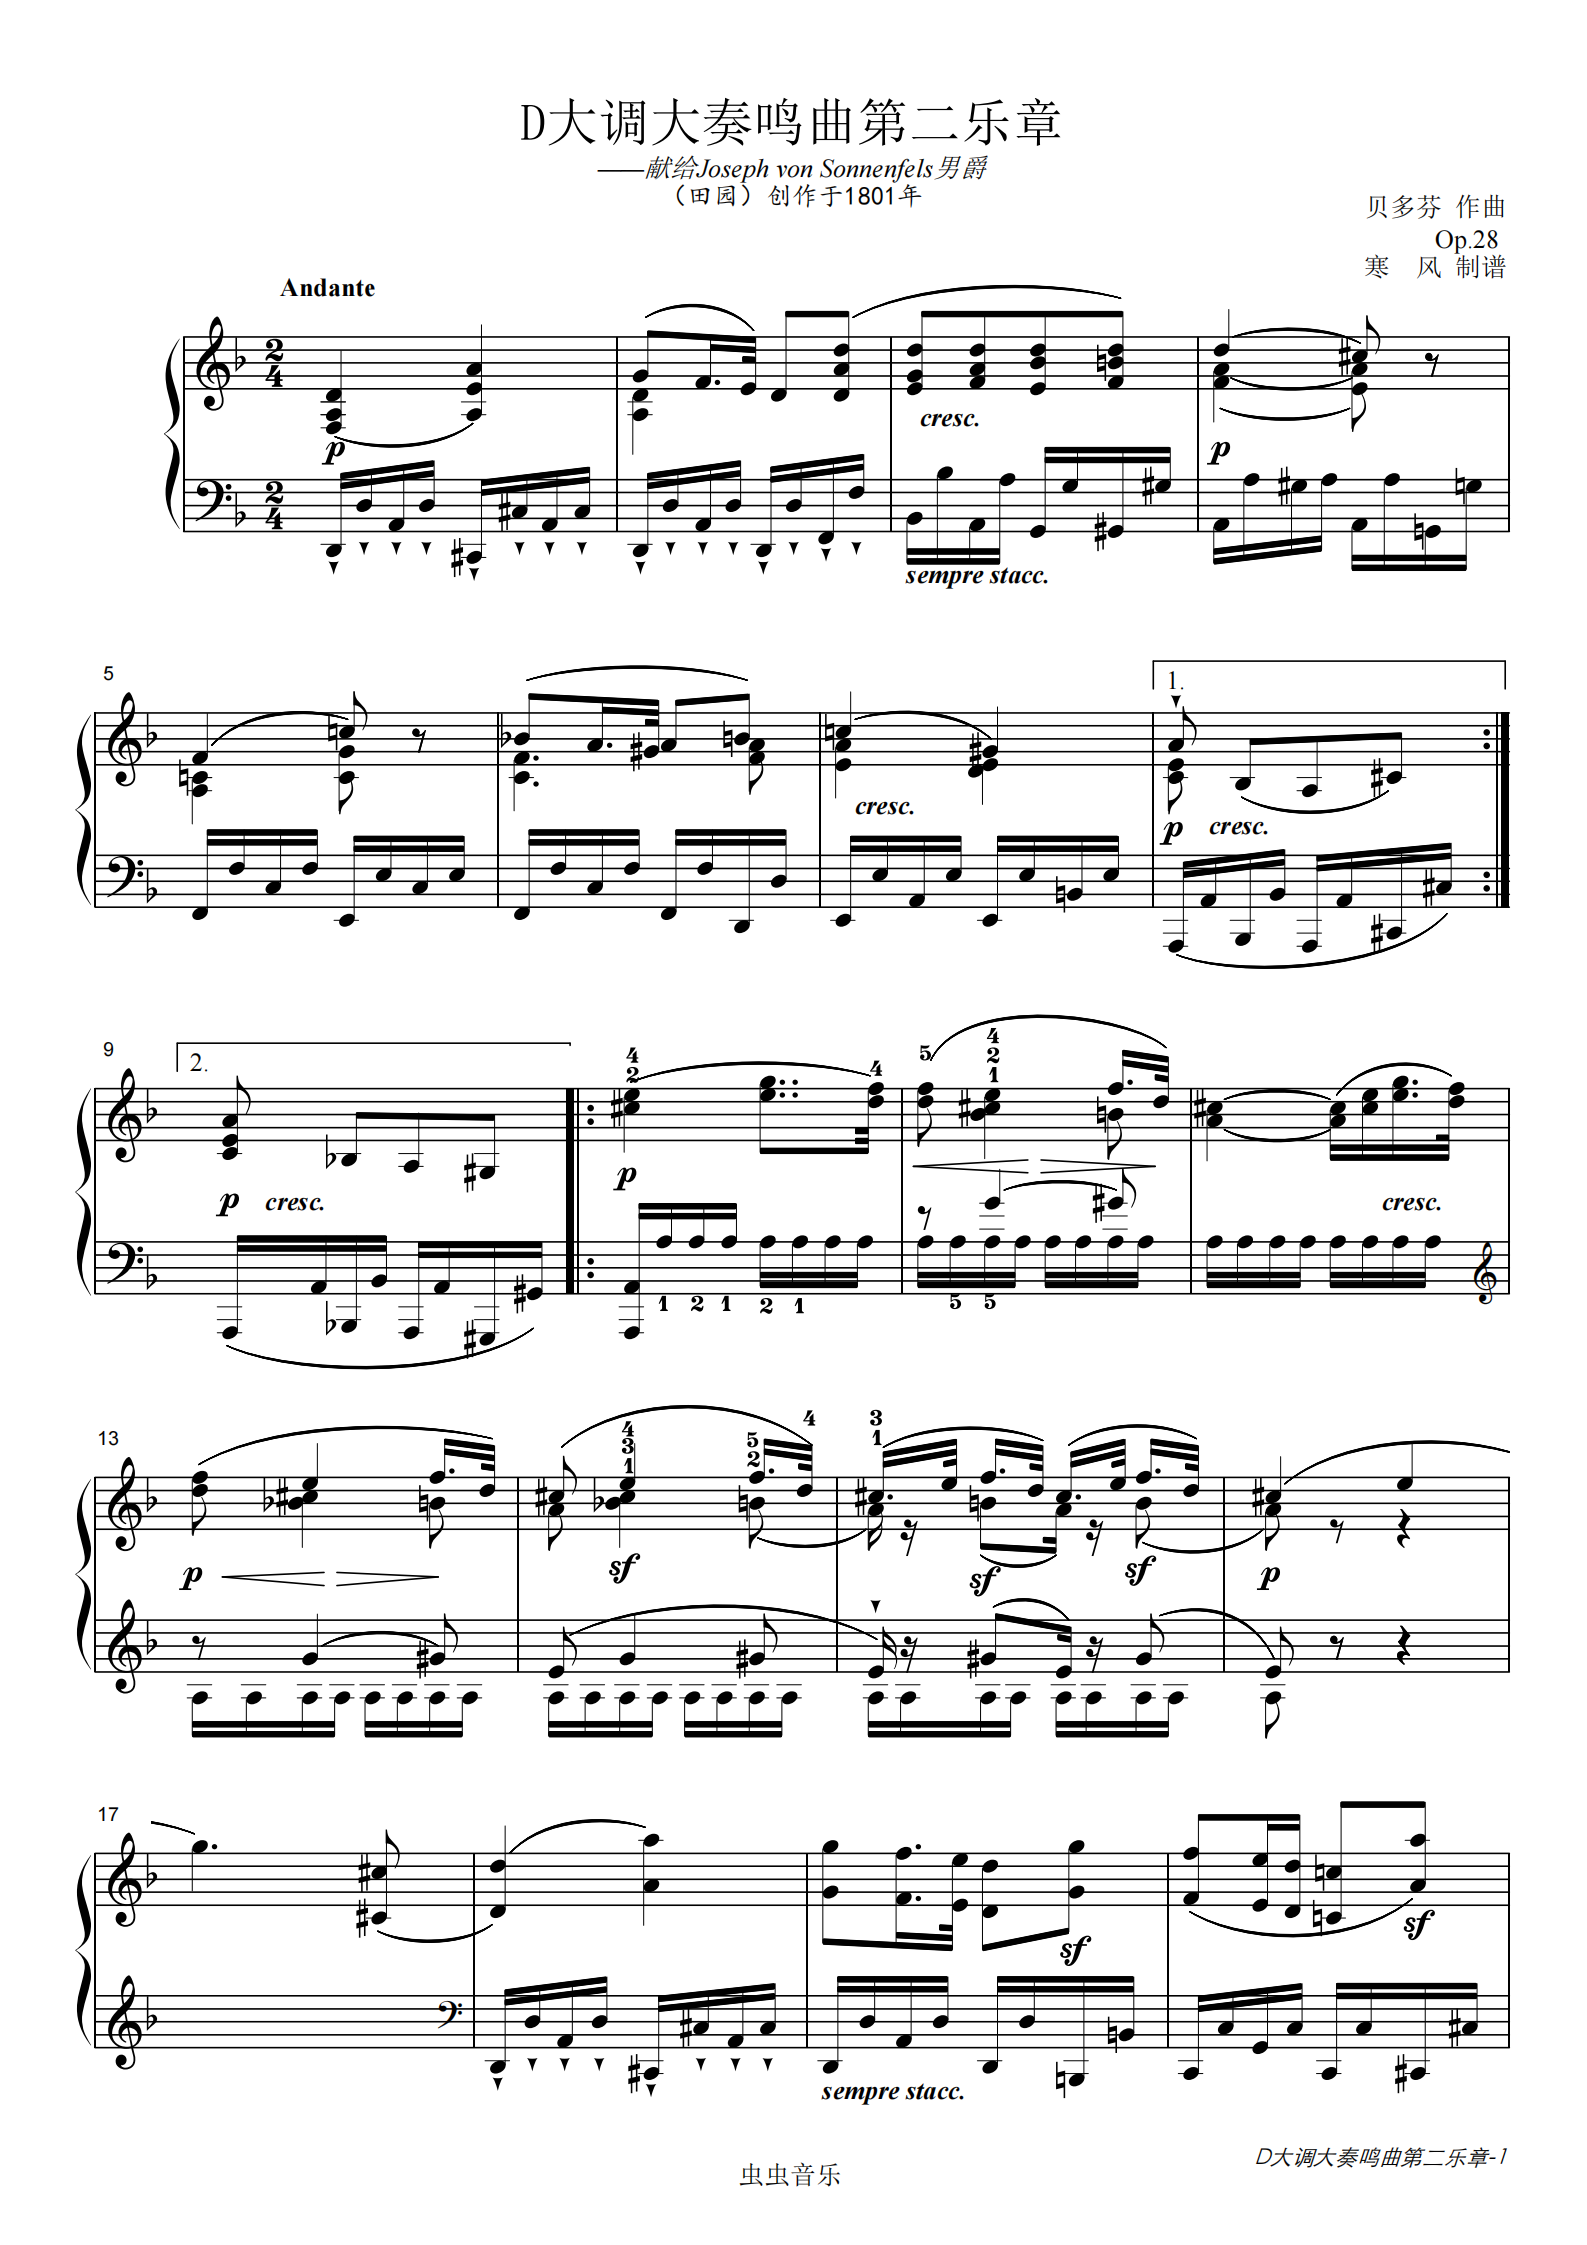 贝多芬-d大调田园奏鸣曲第二乐章钢琴谱-寒风-虫虫钢琴